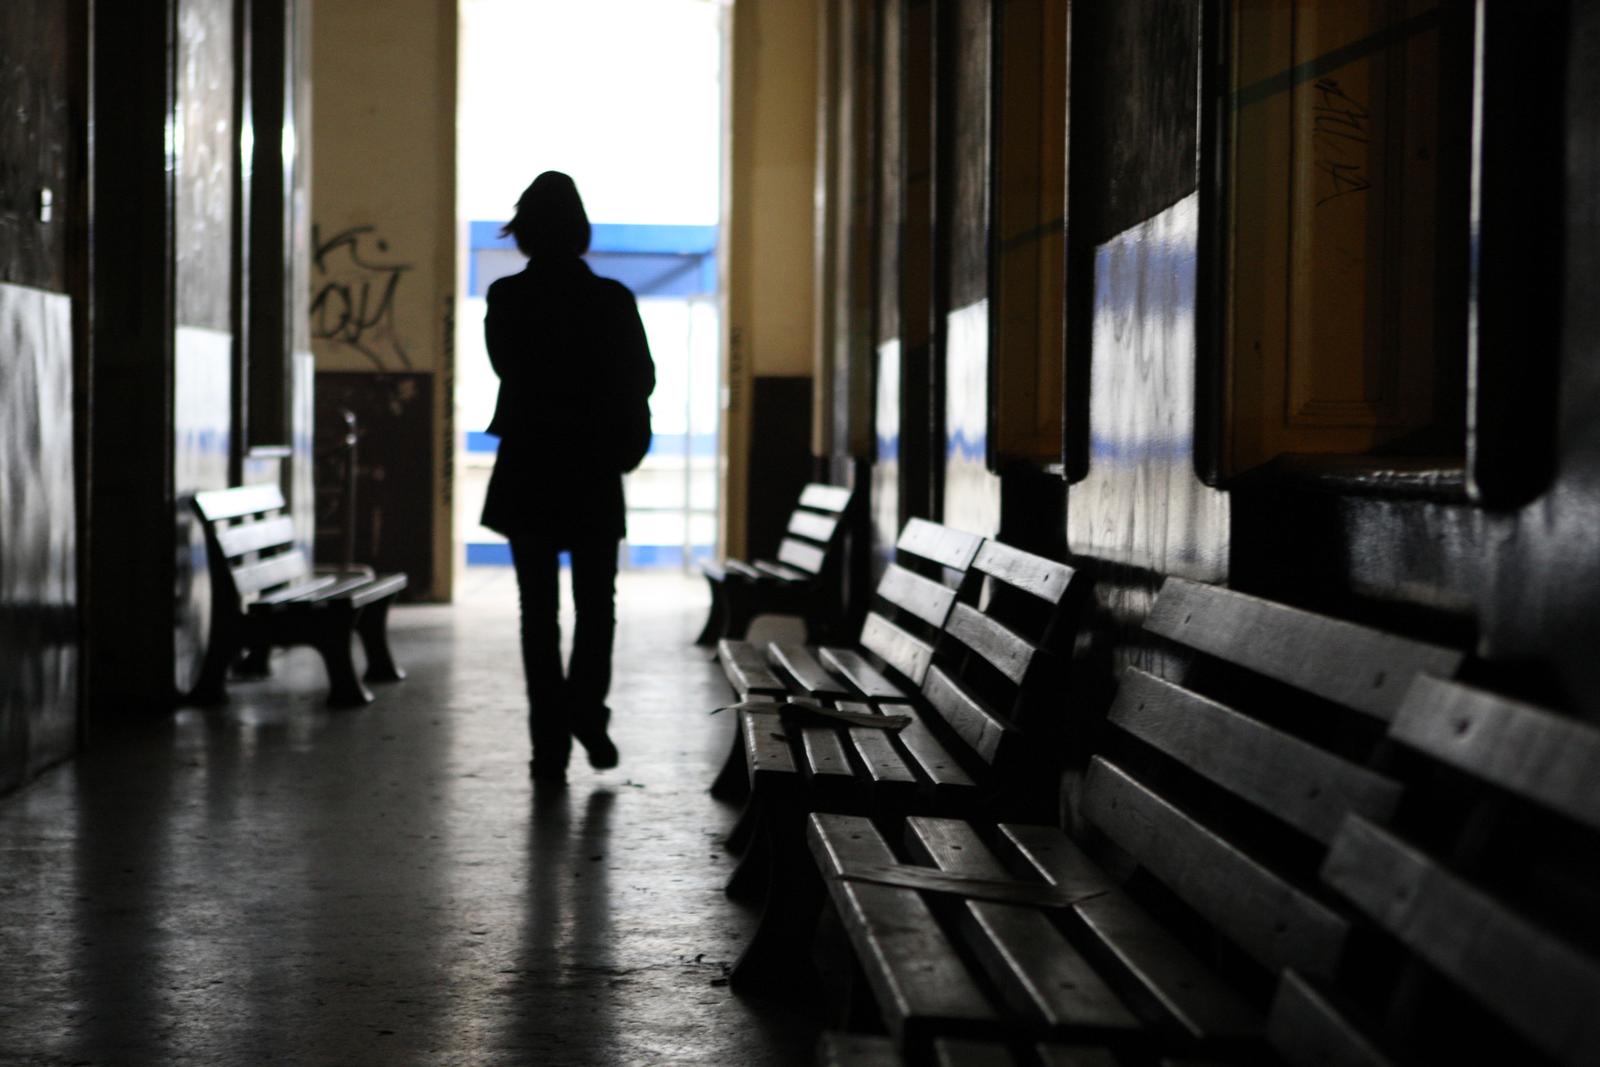 20.11.2009., Zagreb - Zapadni kolodvor na kojem se navodno dogadja maloljetnicka prostitucija. 
Photo: Boris Scitar/PIXSELL